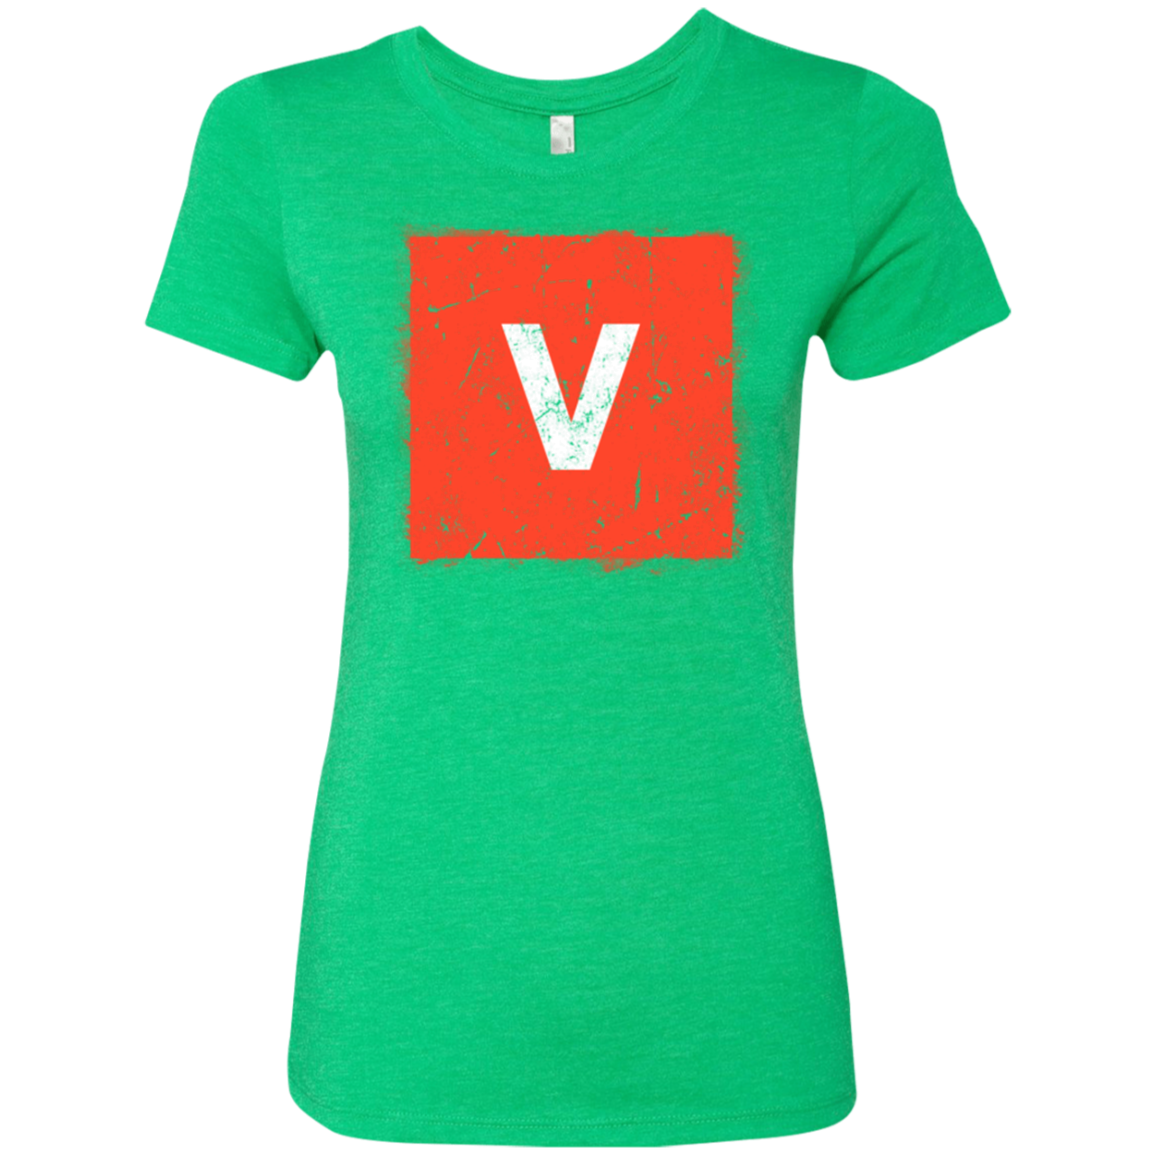 Evolve Women's Triblend T-Shirt